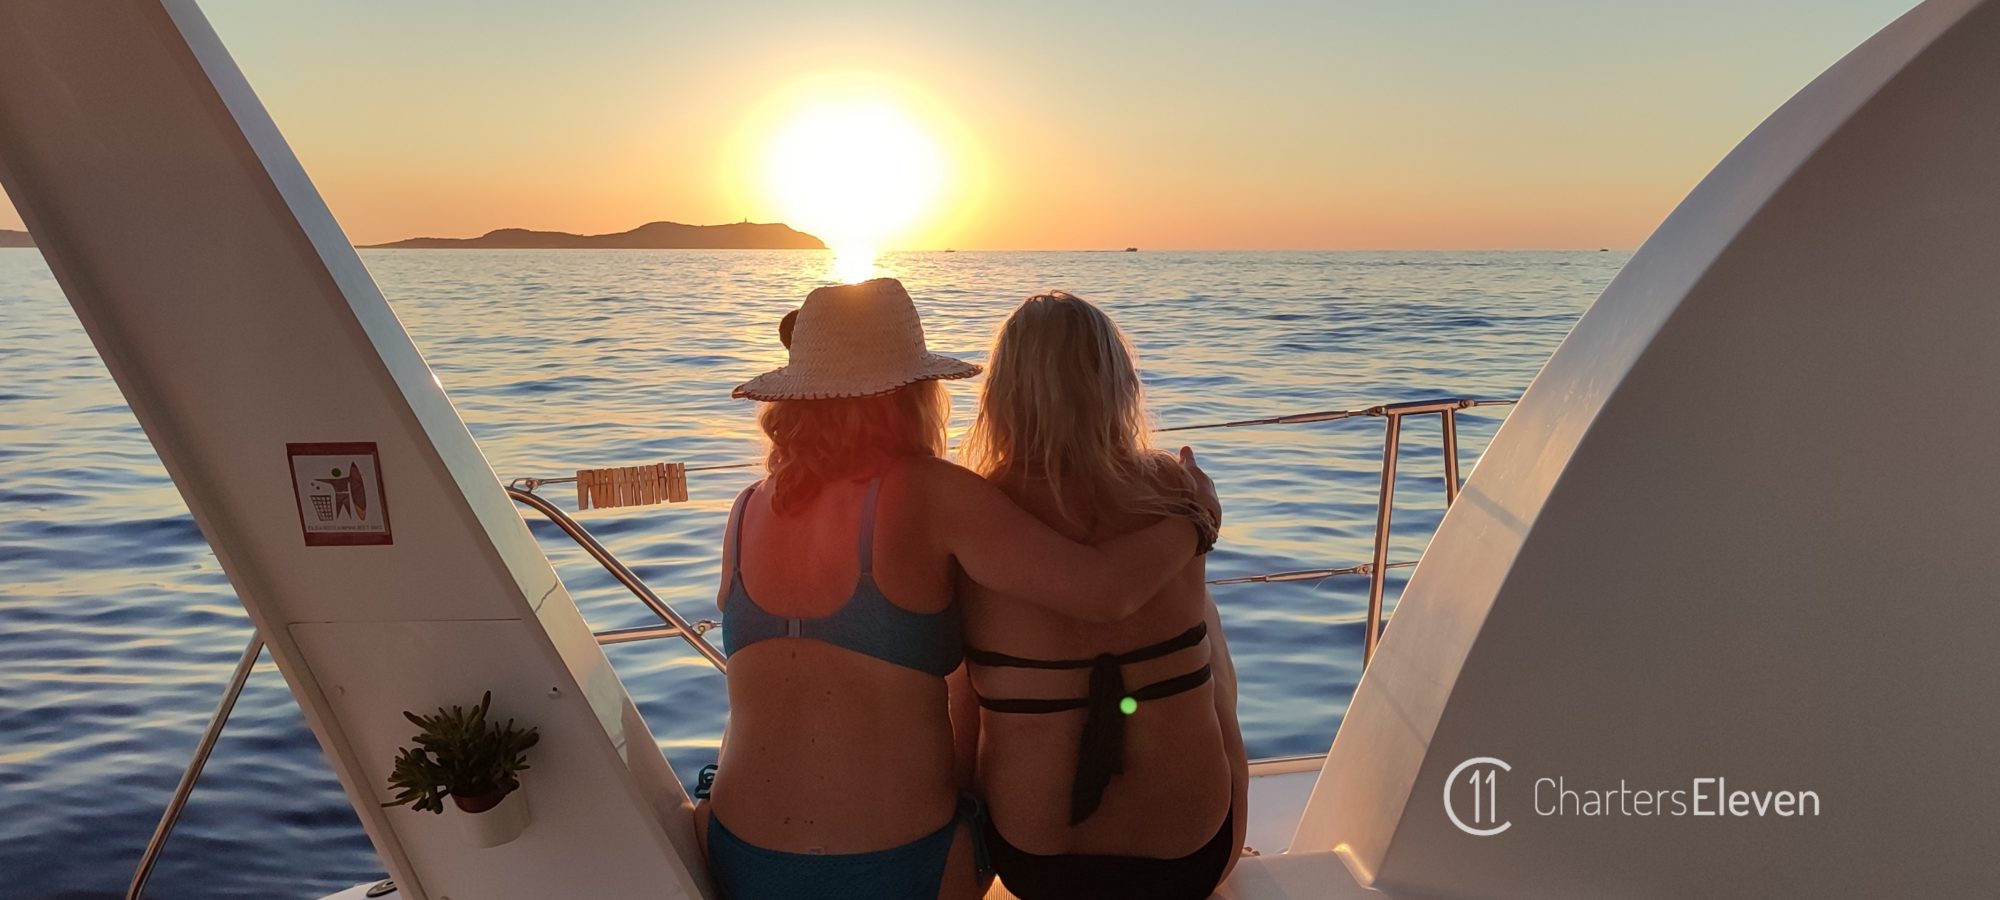 Alquiler de Catamaran en Ibiza. Chicas disfrutando de la puesta de sol.